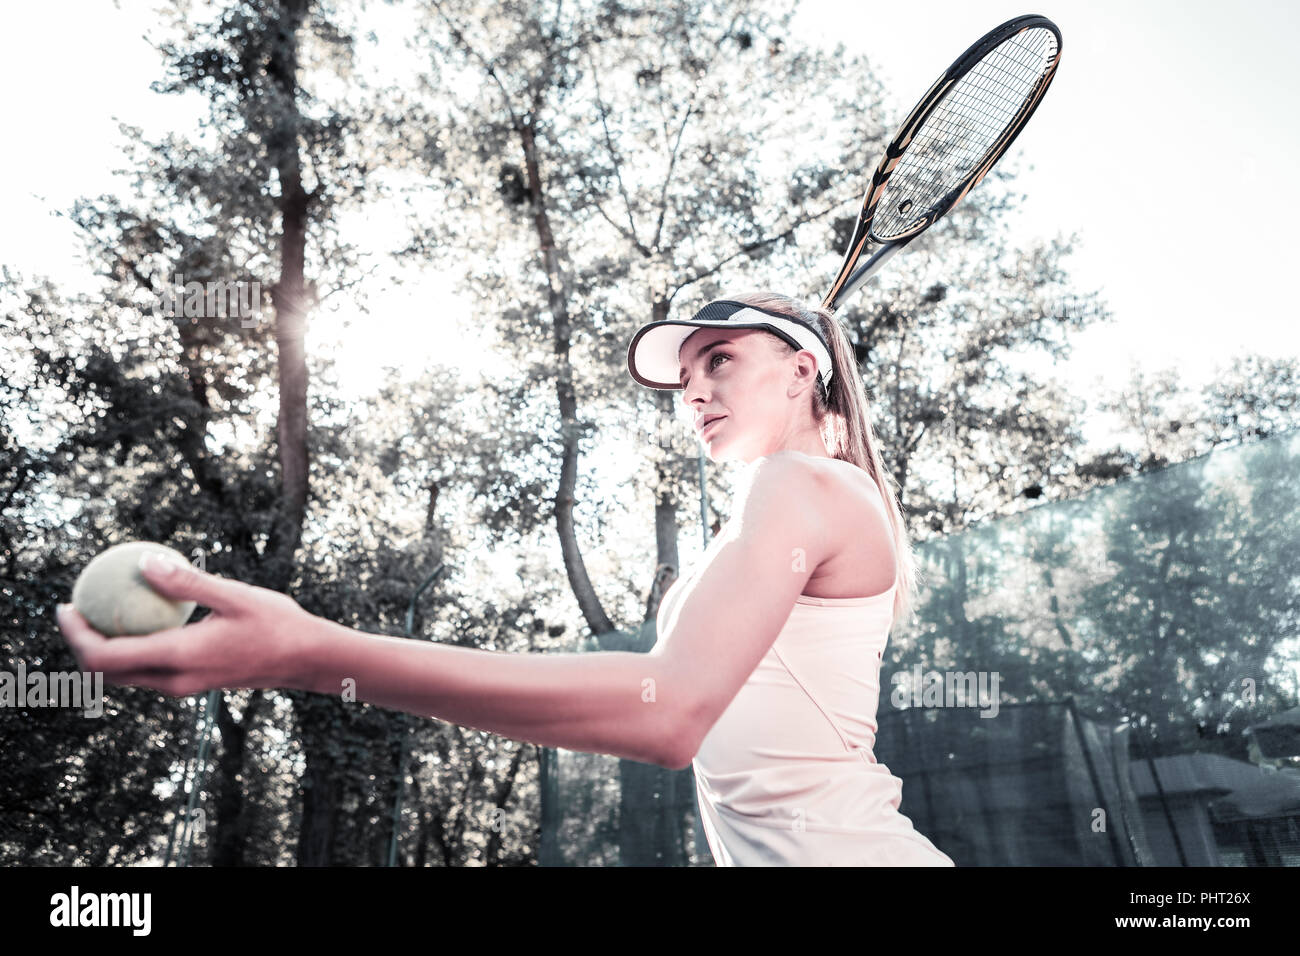 Focused beautiful female player improving tennis technique Stock Photo